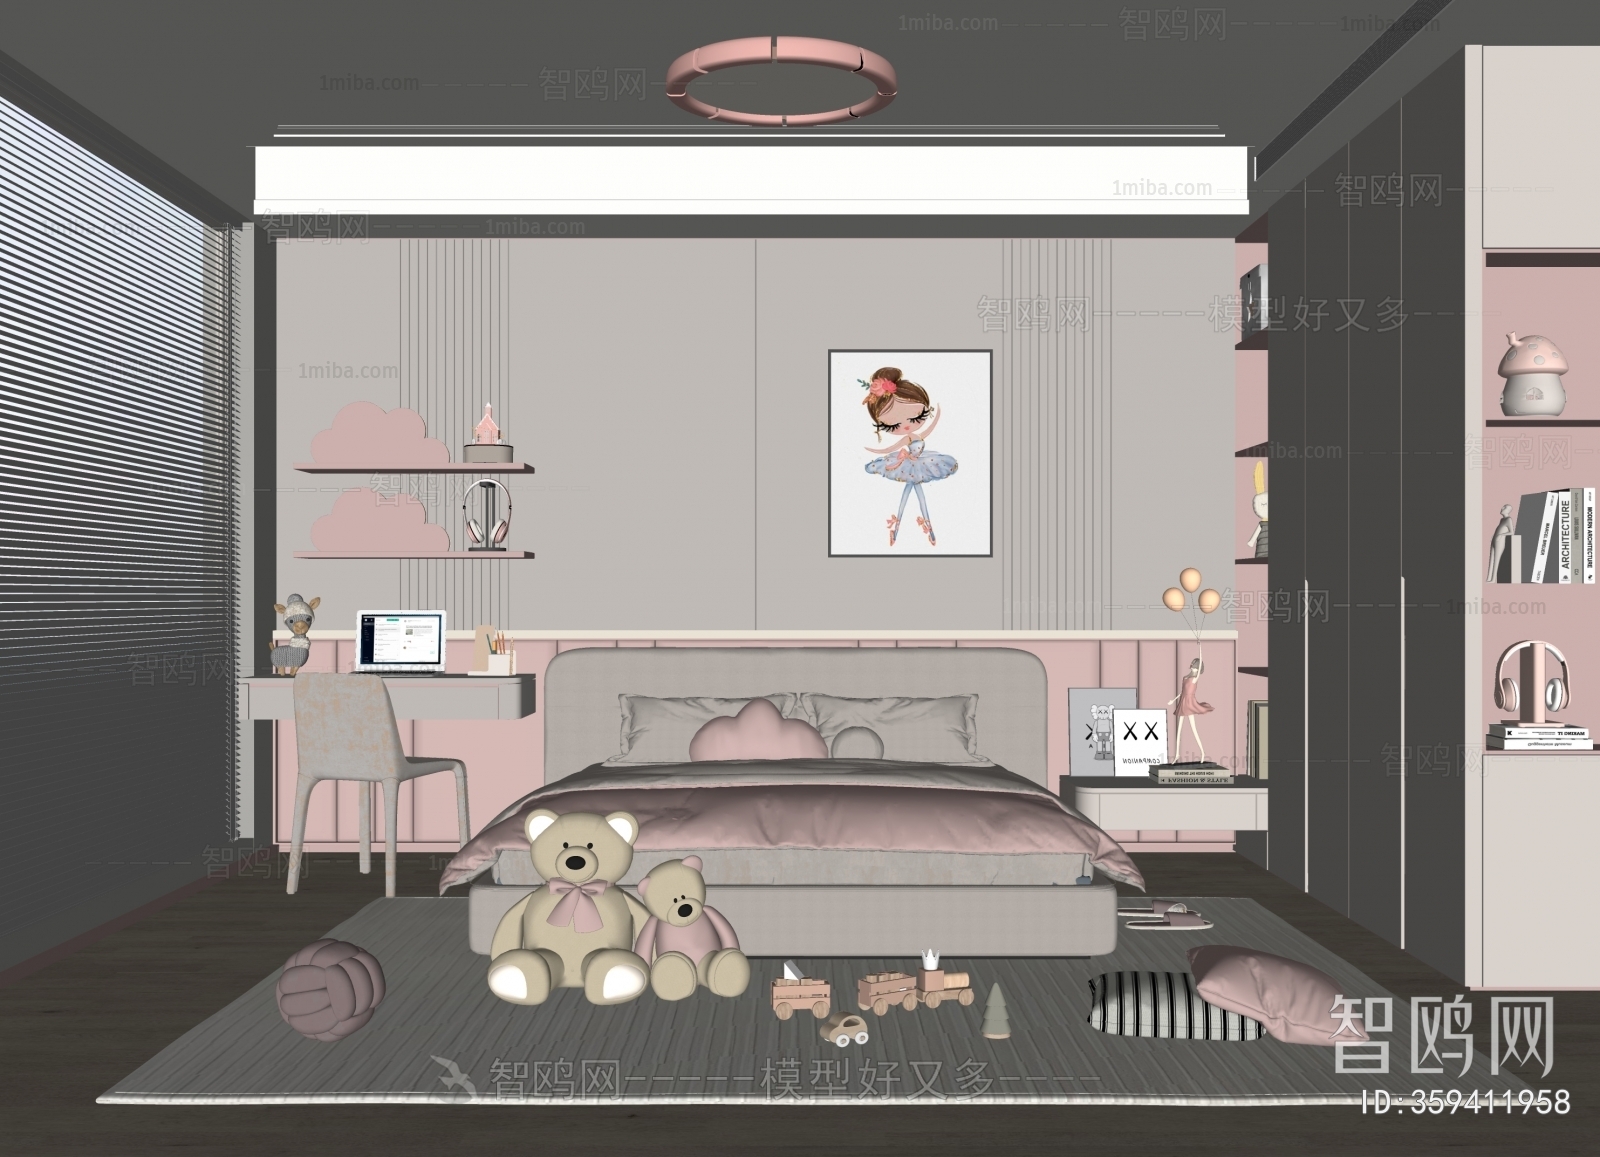 Modern Girl's Room Daughter's Room